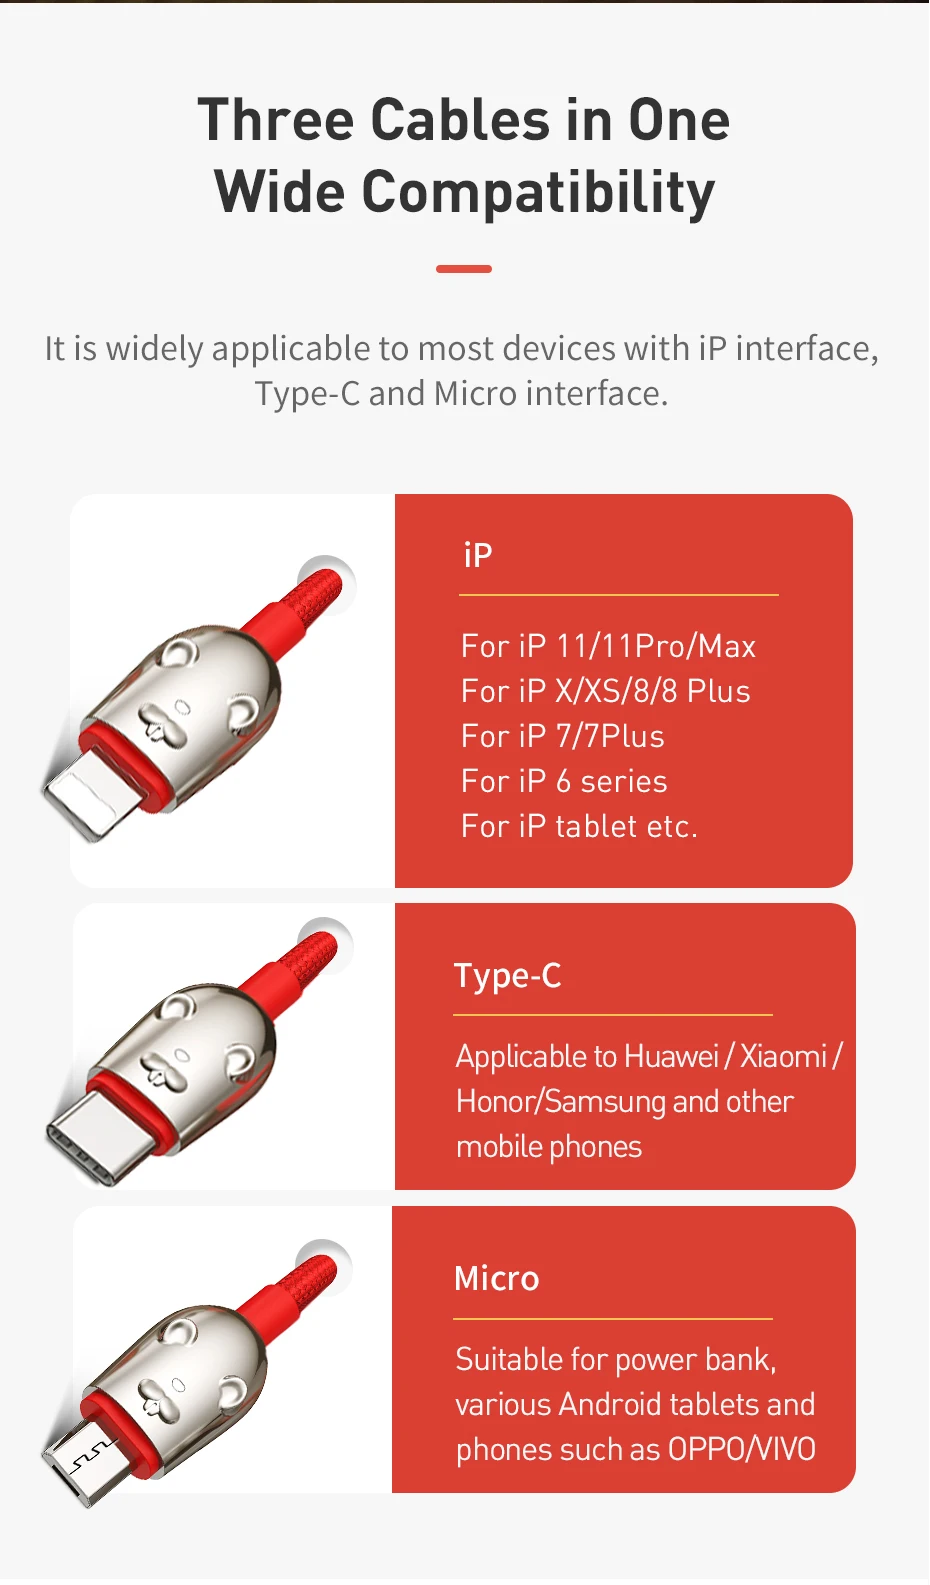 Usb-кабель Baseus 3 в 1 type C для iPhone XR XS Max, зарядный кабель USB type C для samsung S10 S9 huawei, светодиодный кабель Micro usb